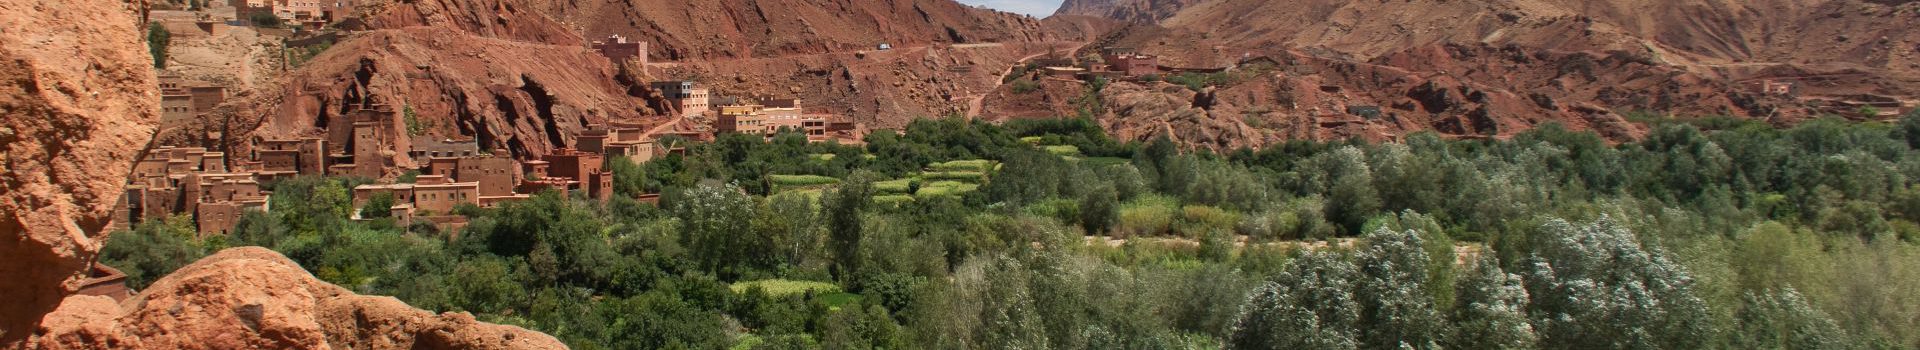 Eindrücke aus dem zauberhaften Marokko